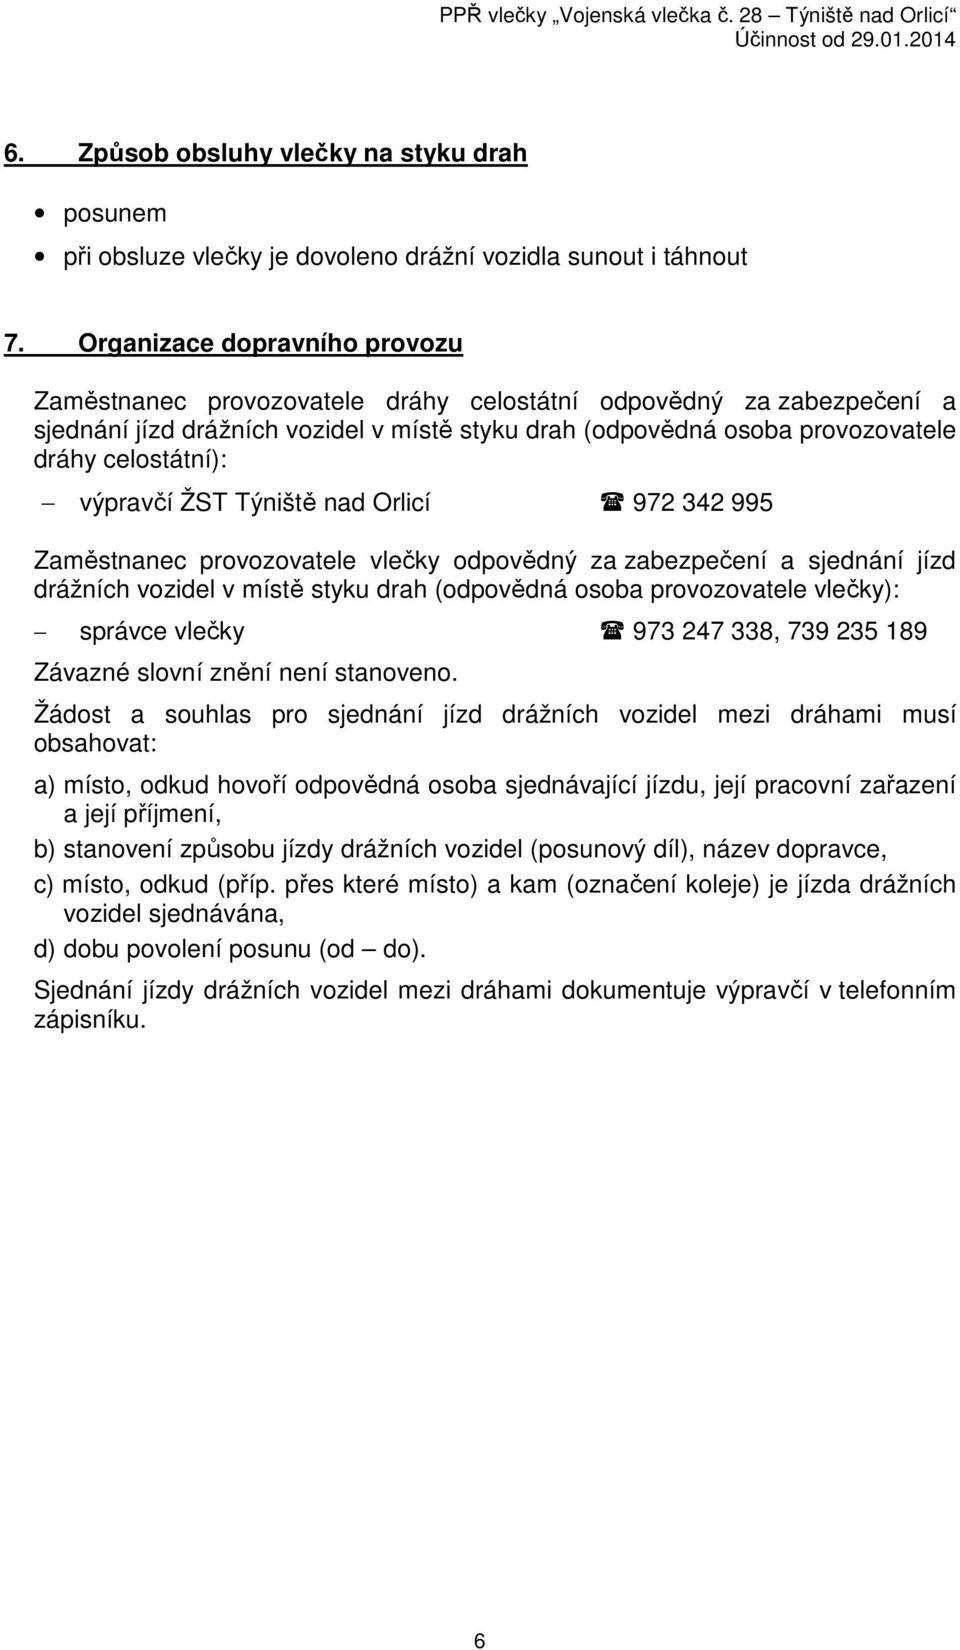 výpravčí ŽST Týniště nad Orlicí 972 342 995 Zaměstnanec provozovatele vlečky odpovědný za zabezpečení a sjednání jízd drážních vozidel v místě styku drah (odpovědná osoba provozovatele vlečky):